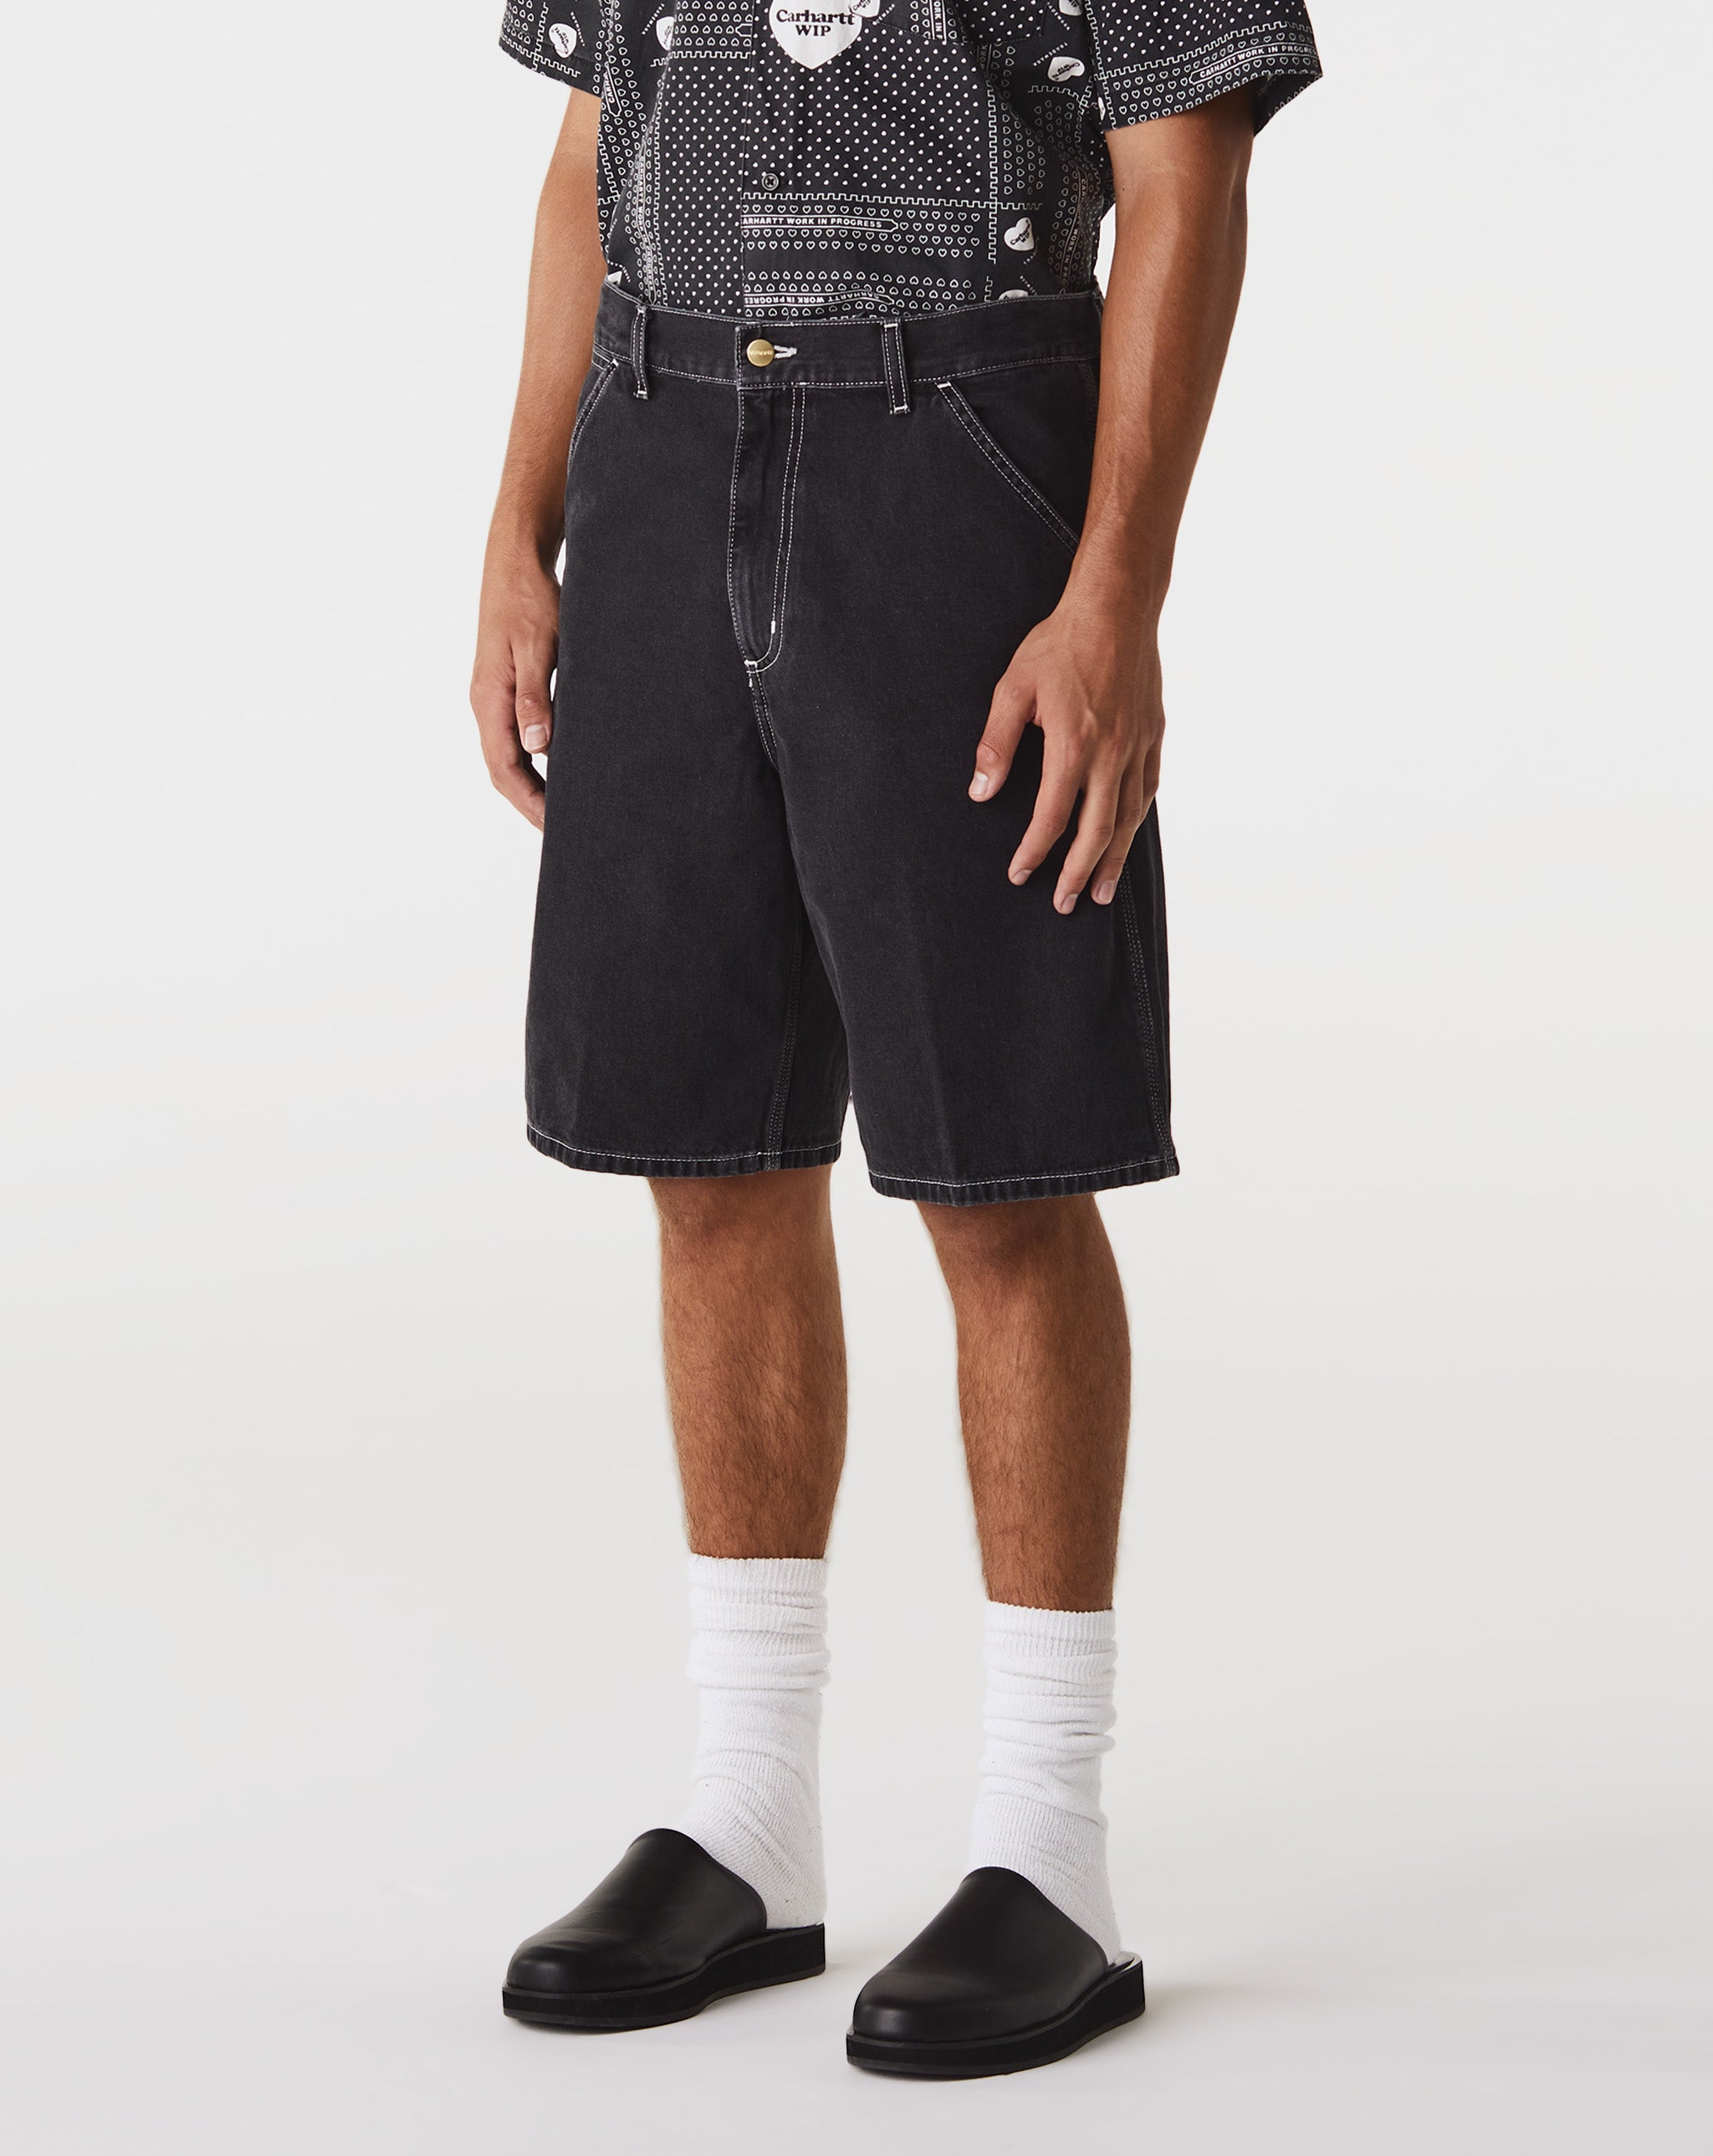 Carhartt WIP Simple Shorts  - Cheap Urlfreeze Jordan outlet